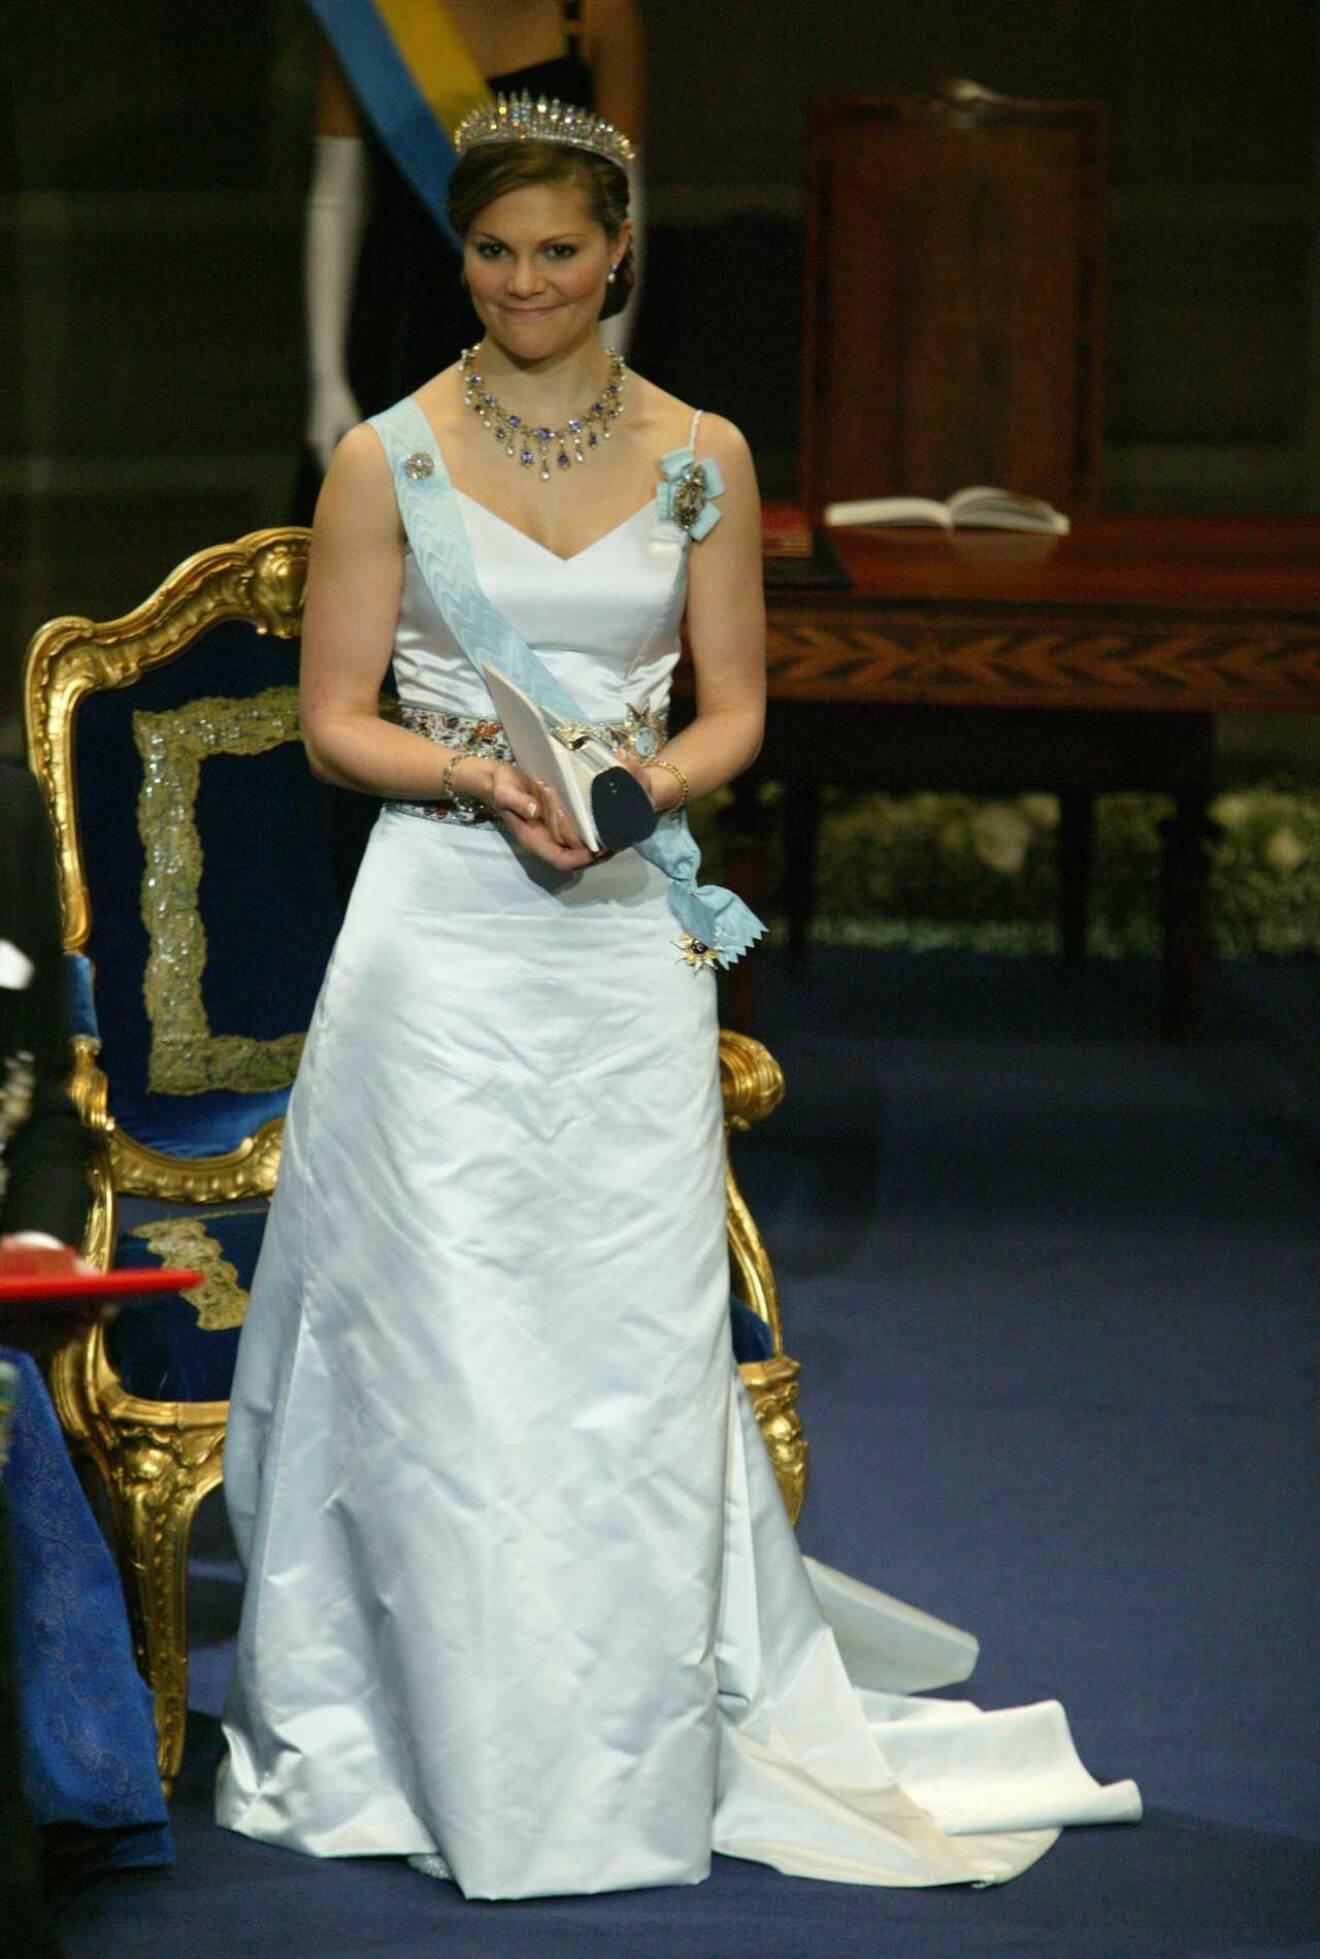 På nobel 2005 bar kronprinsessan Victoria en vit klänning med glittrigt skärp